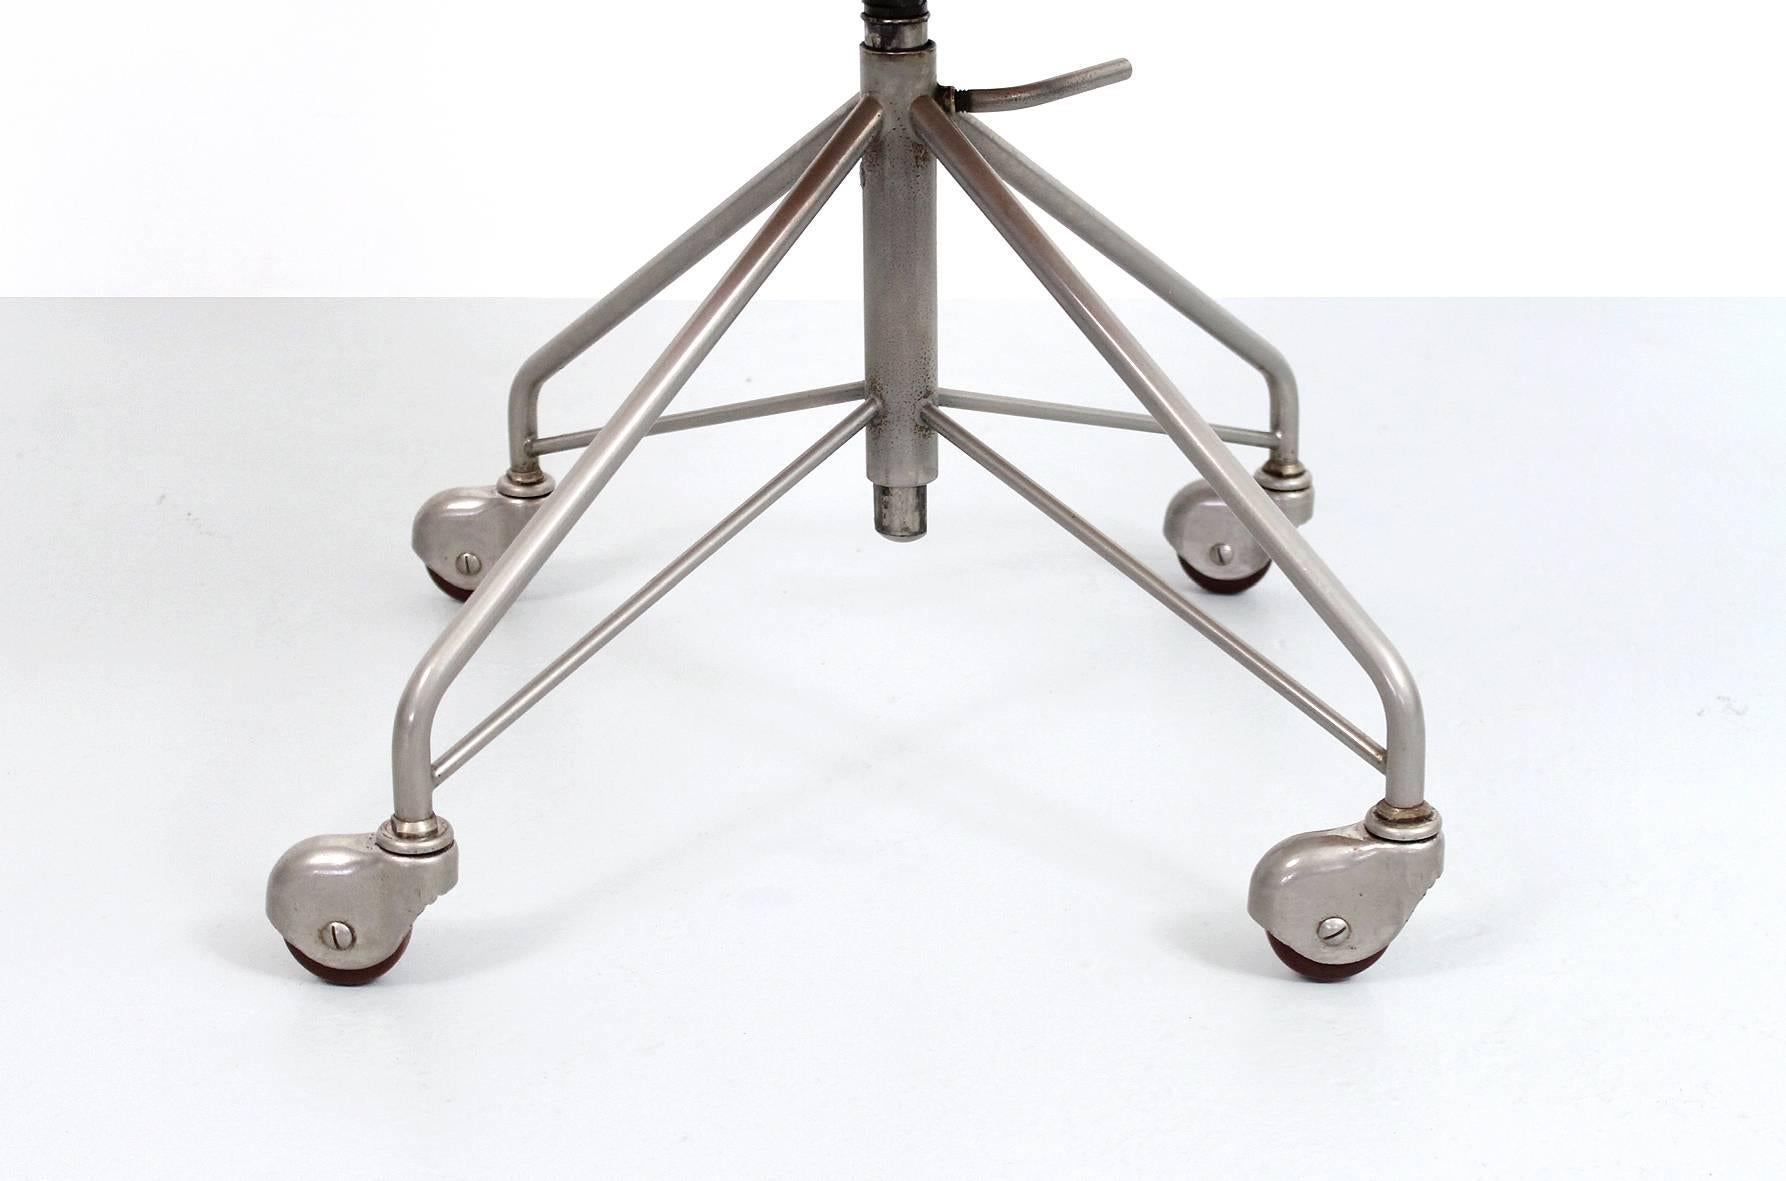 Sevener Desk Chair by Arne Jacobsen 1